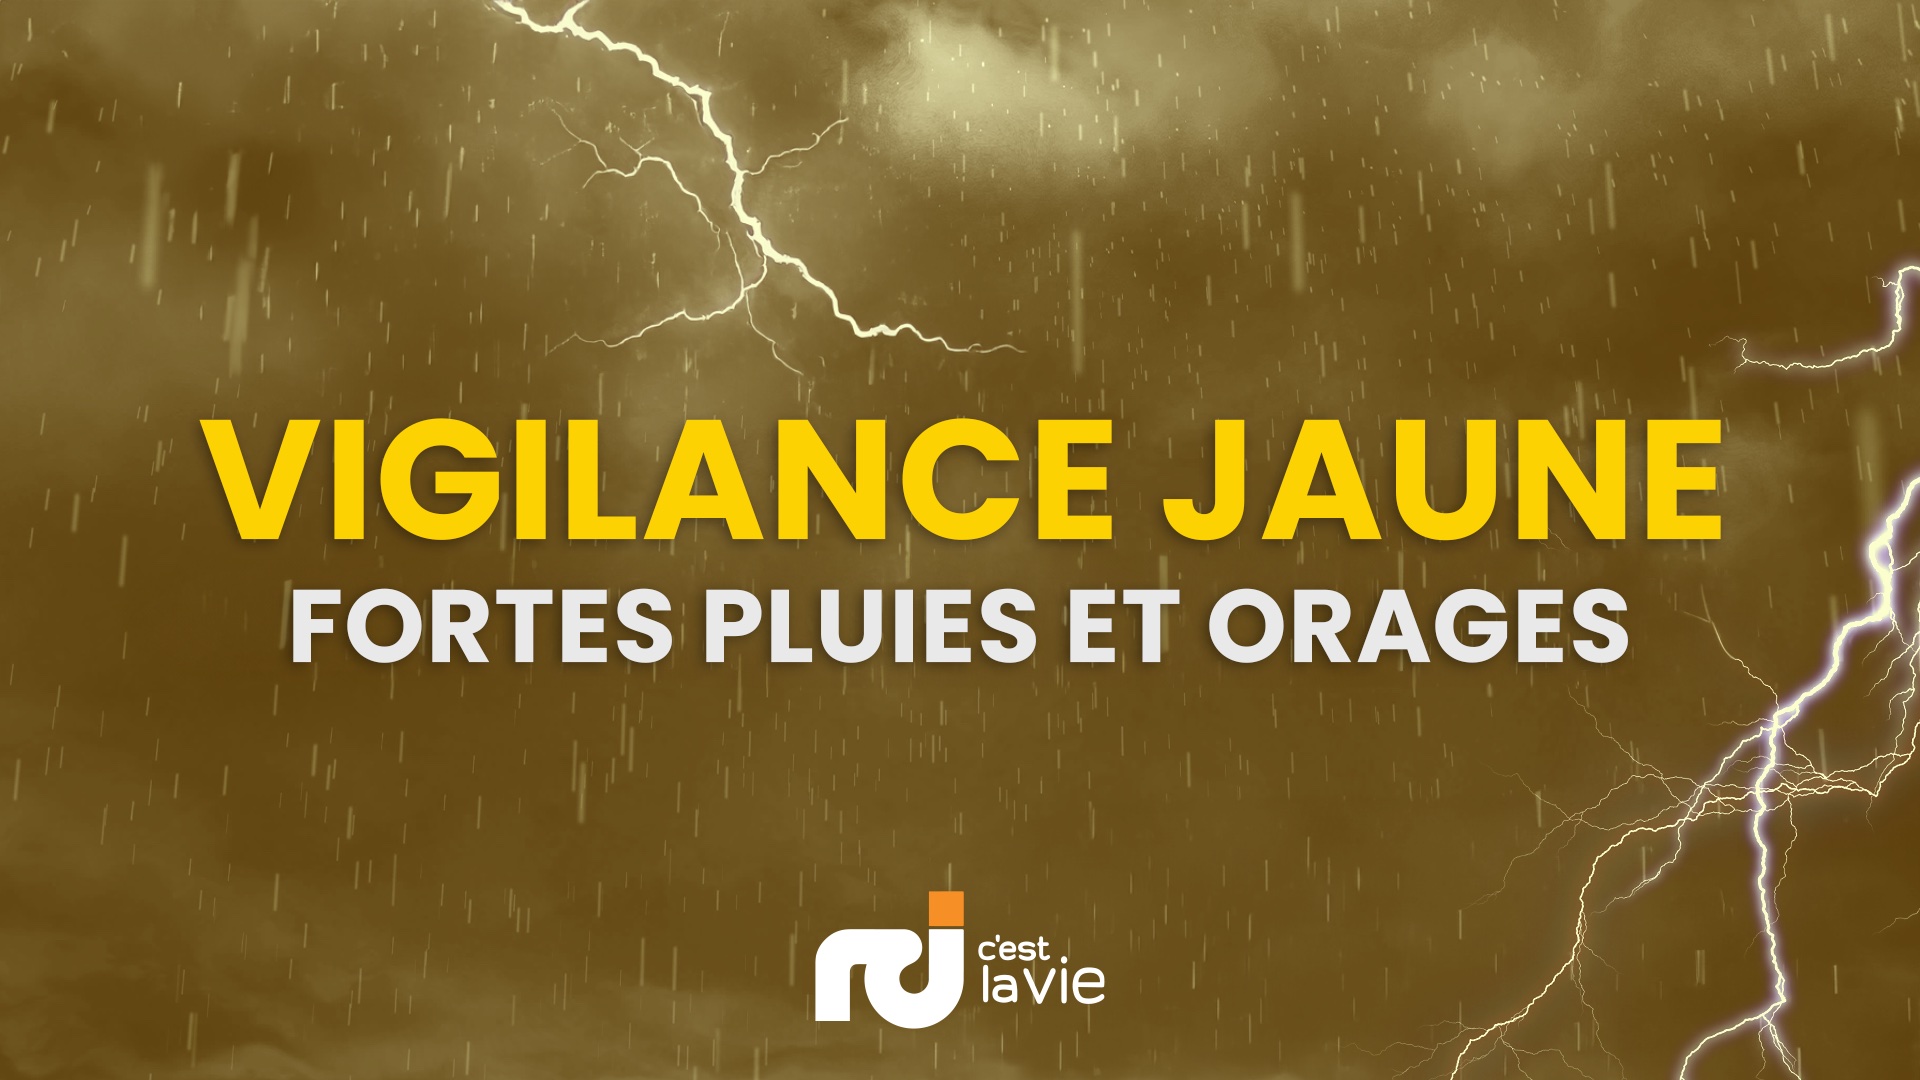     Maintien de la vigilance jaune pour fortes pluies et orages en Guadeloupe

